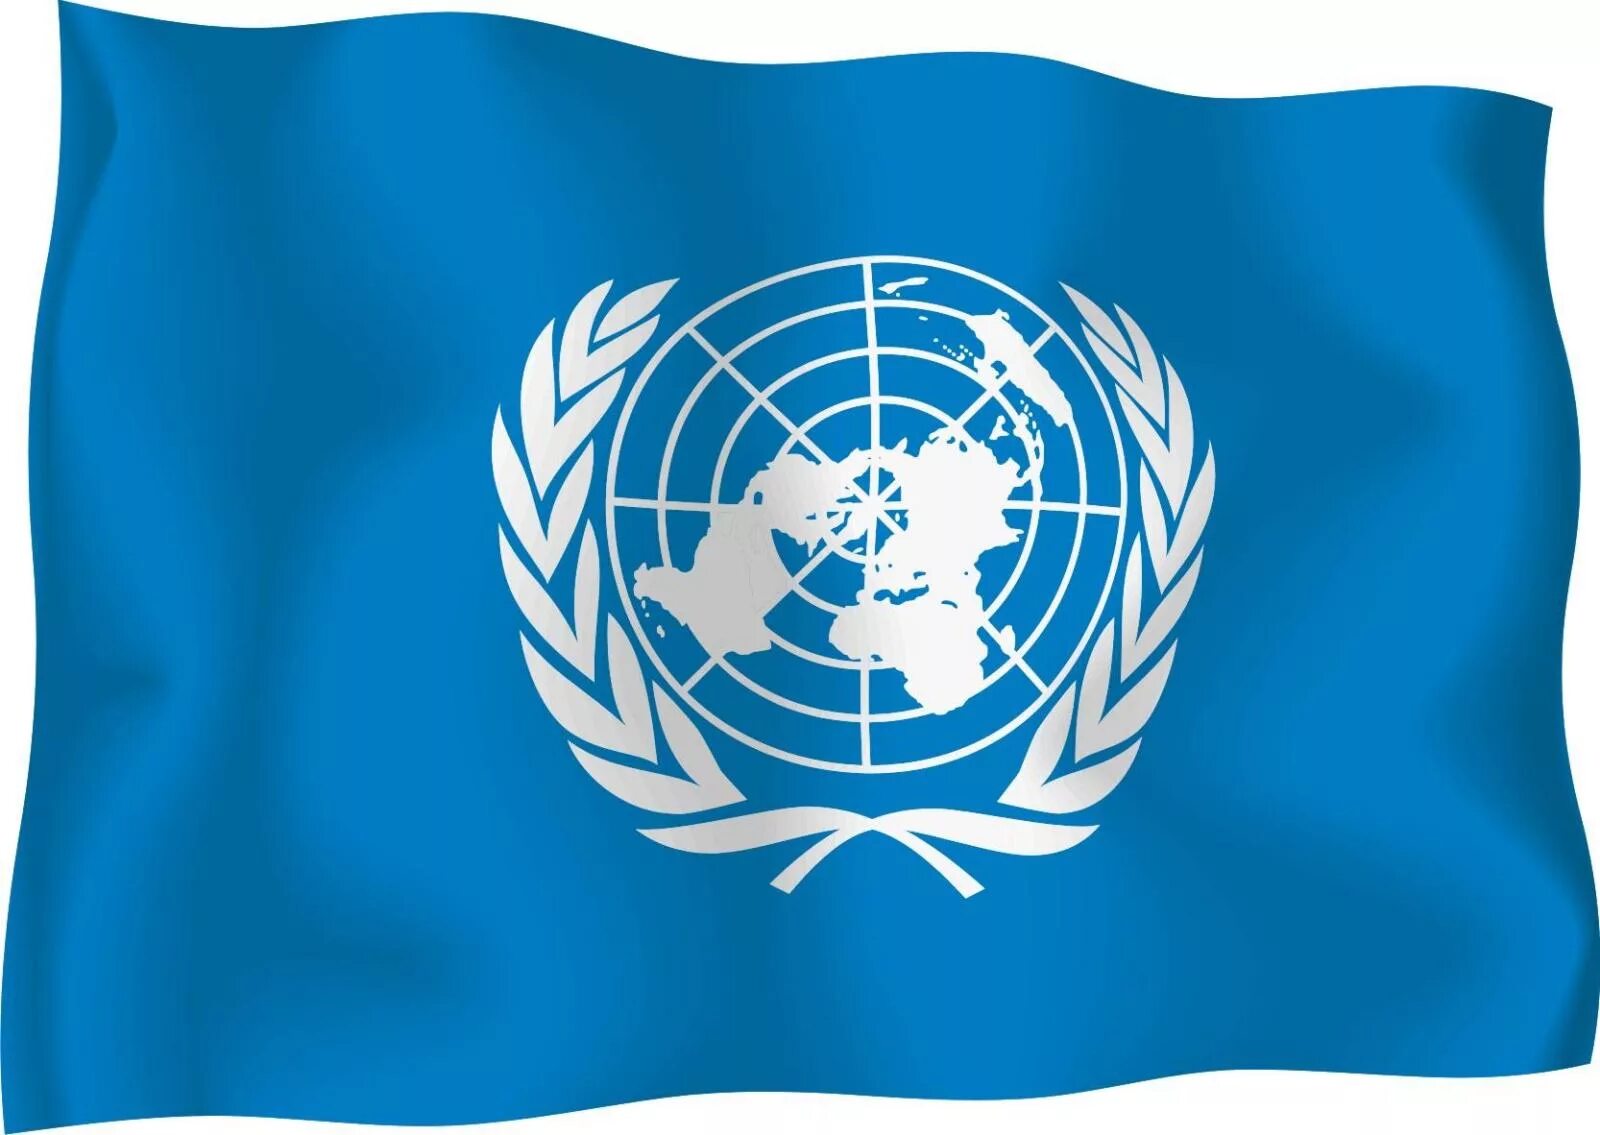 Образ оон. Организация Объединенных наций ООН флаг. Флаг флаг организации Объединенных наций. Флаг ООН флаг ООН. Международные организации ООН.